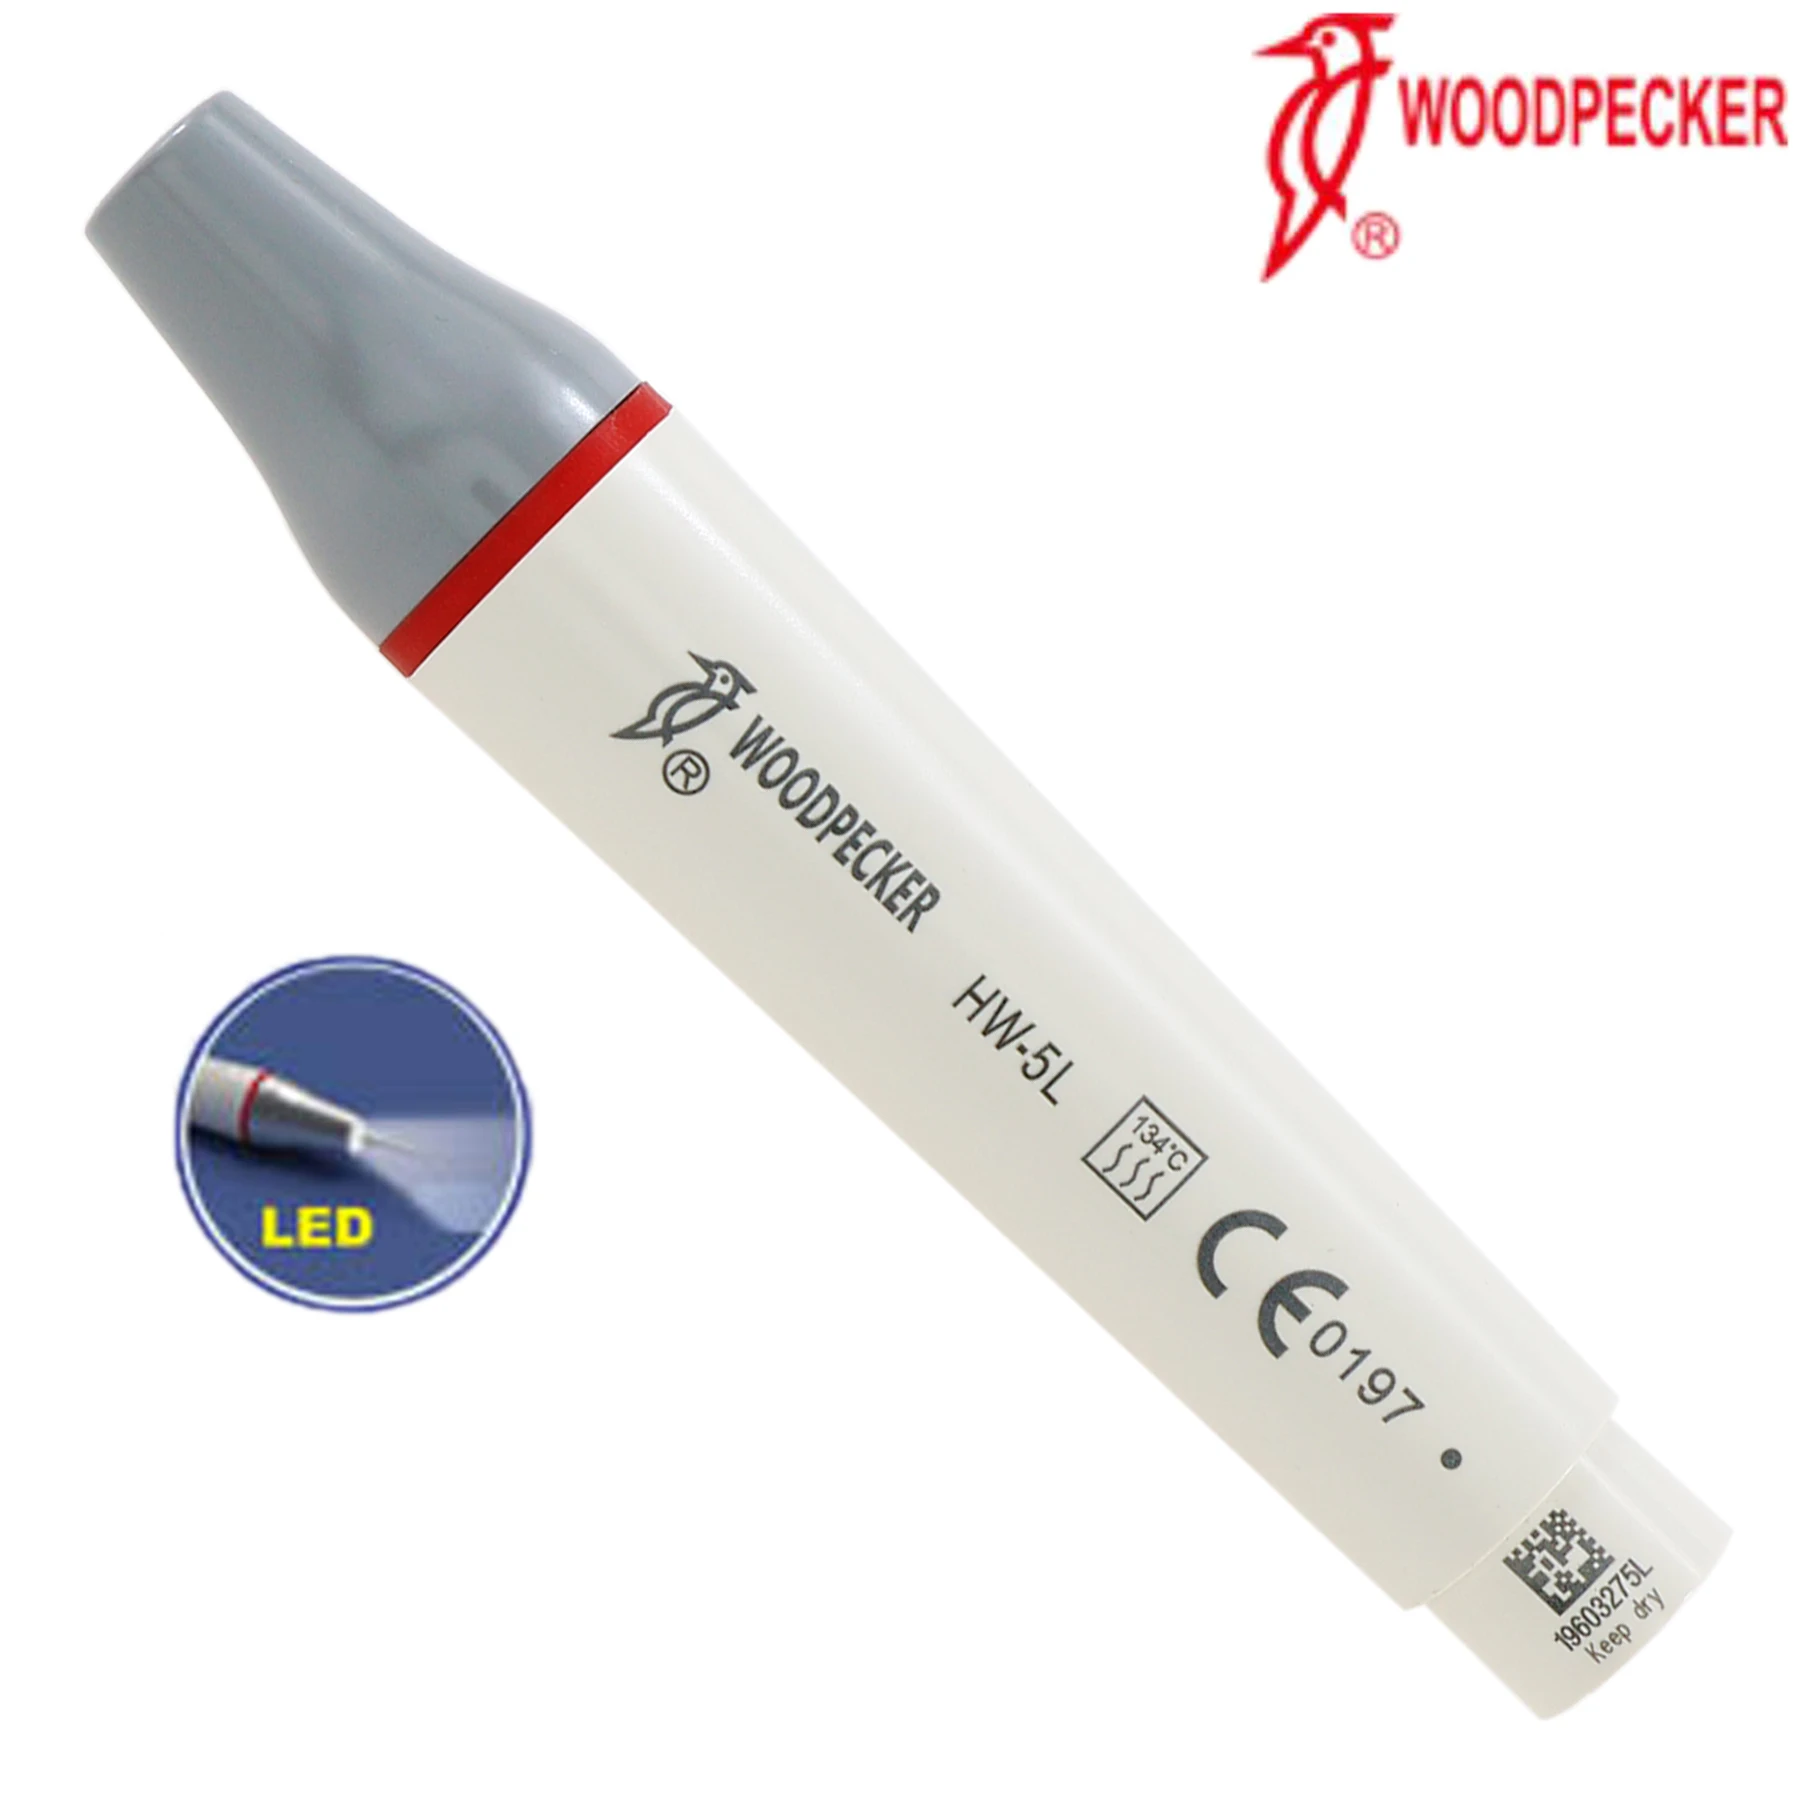 Woodpecker Detachable HW-5L Ultrasonic Piezo Dental Scaler LED light Handpiece